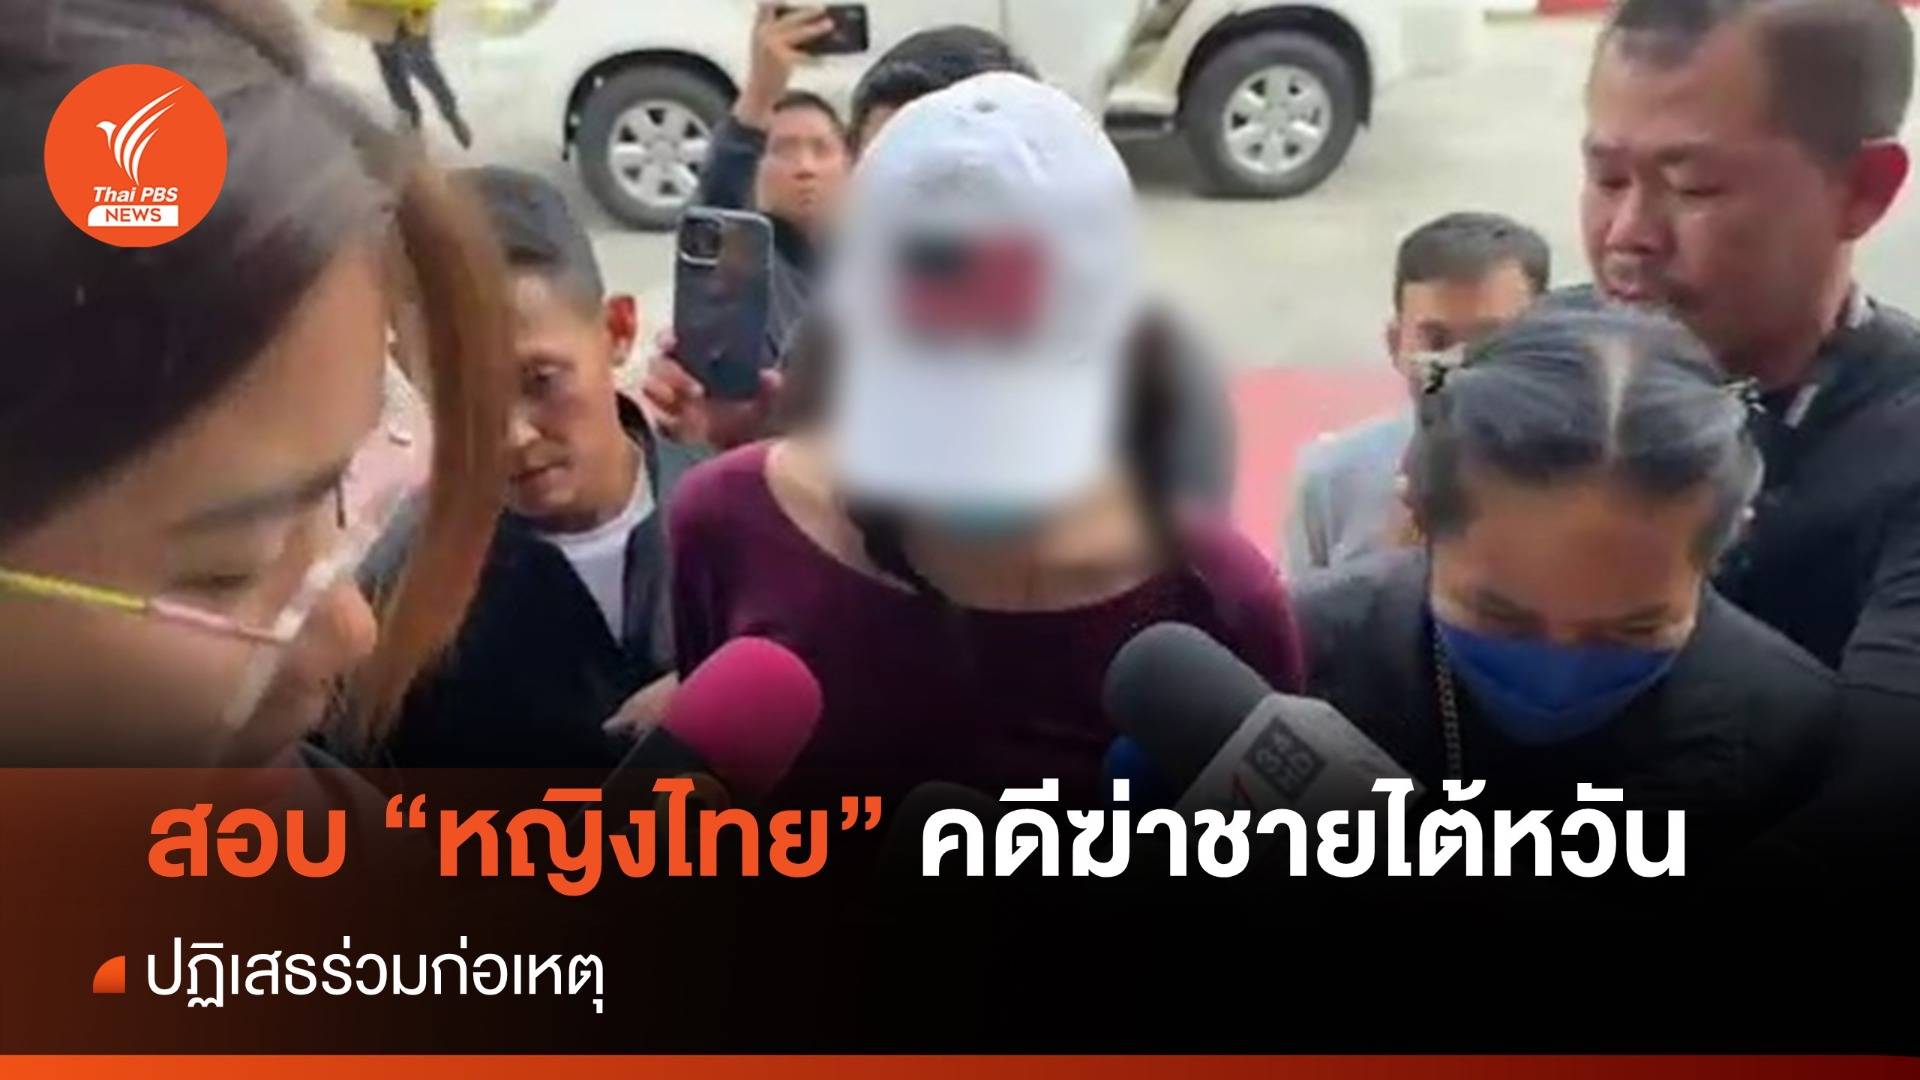 สอบสวน "หญิงไทย" ปฏิเสธร่วมสังหารชายไต้หวัน